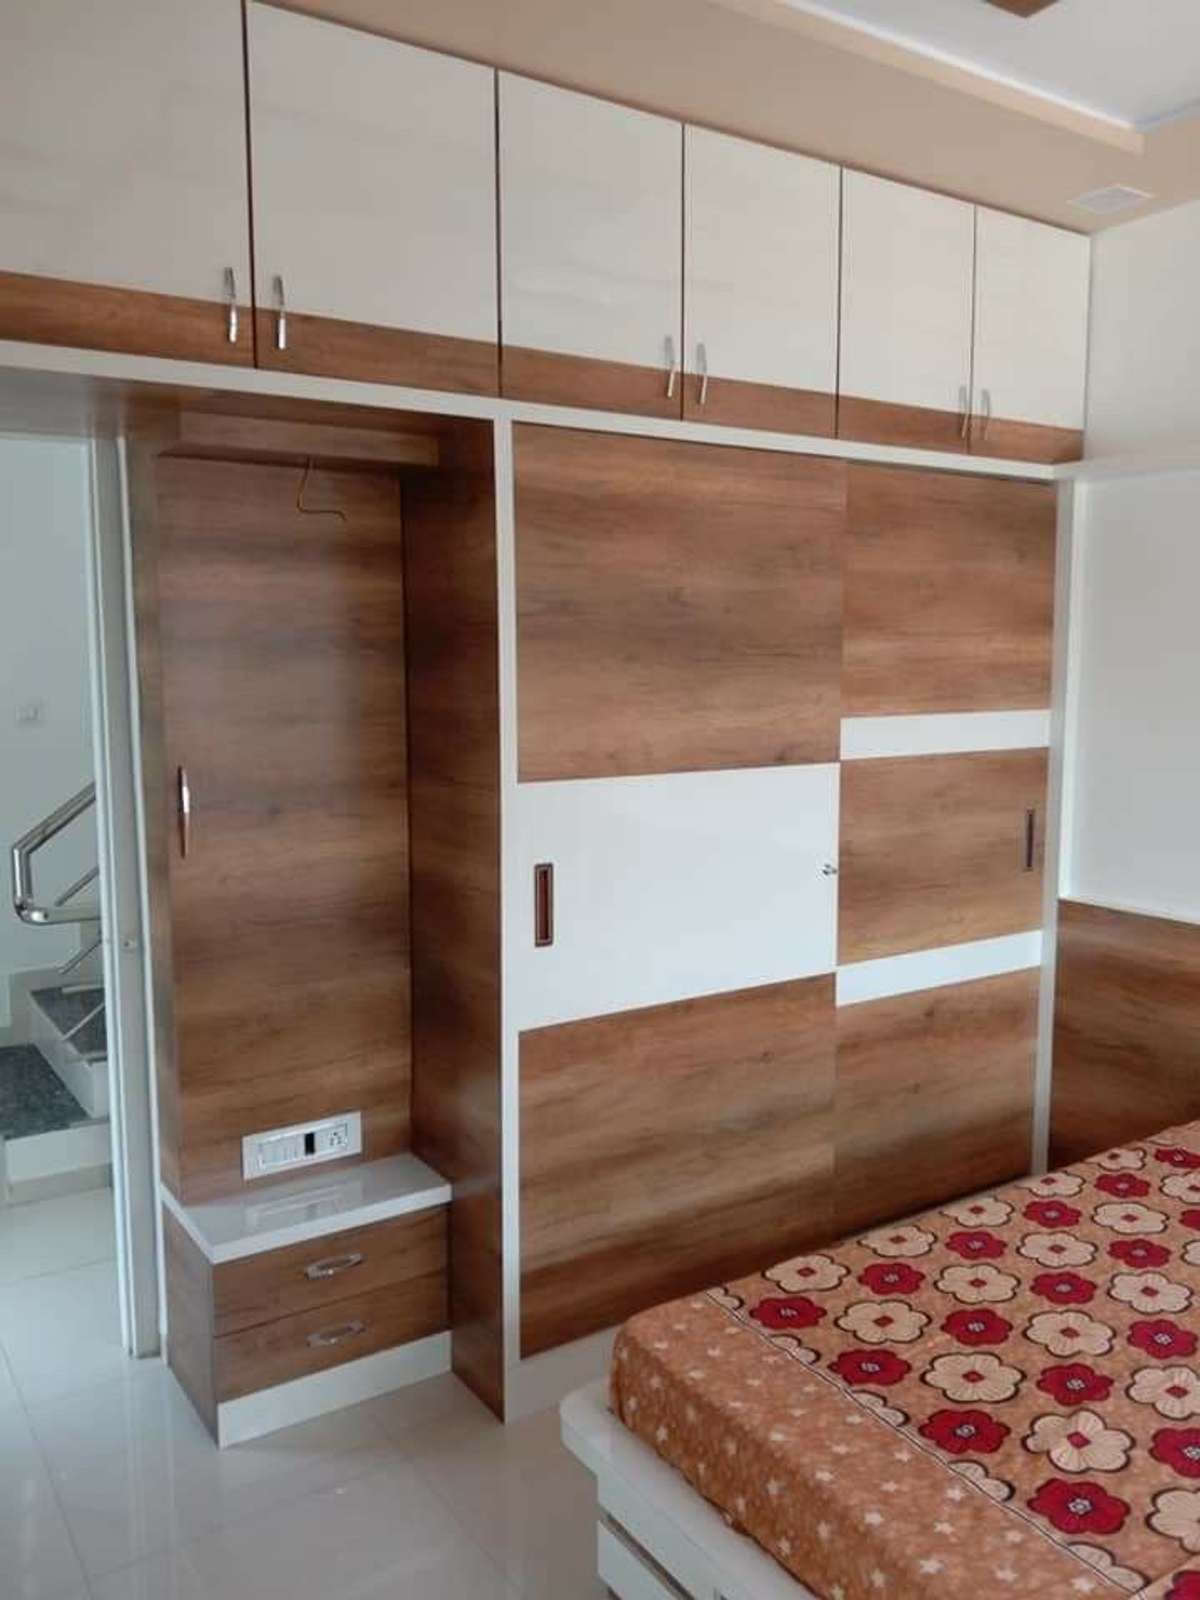 Living, Storage Designs by Carpenter Kerala Carpenters All Kerala work, Ernakulam | Kolo